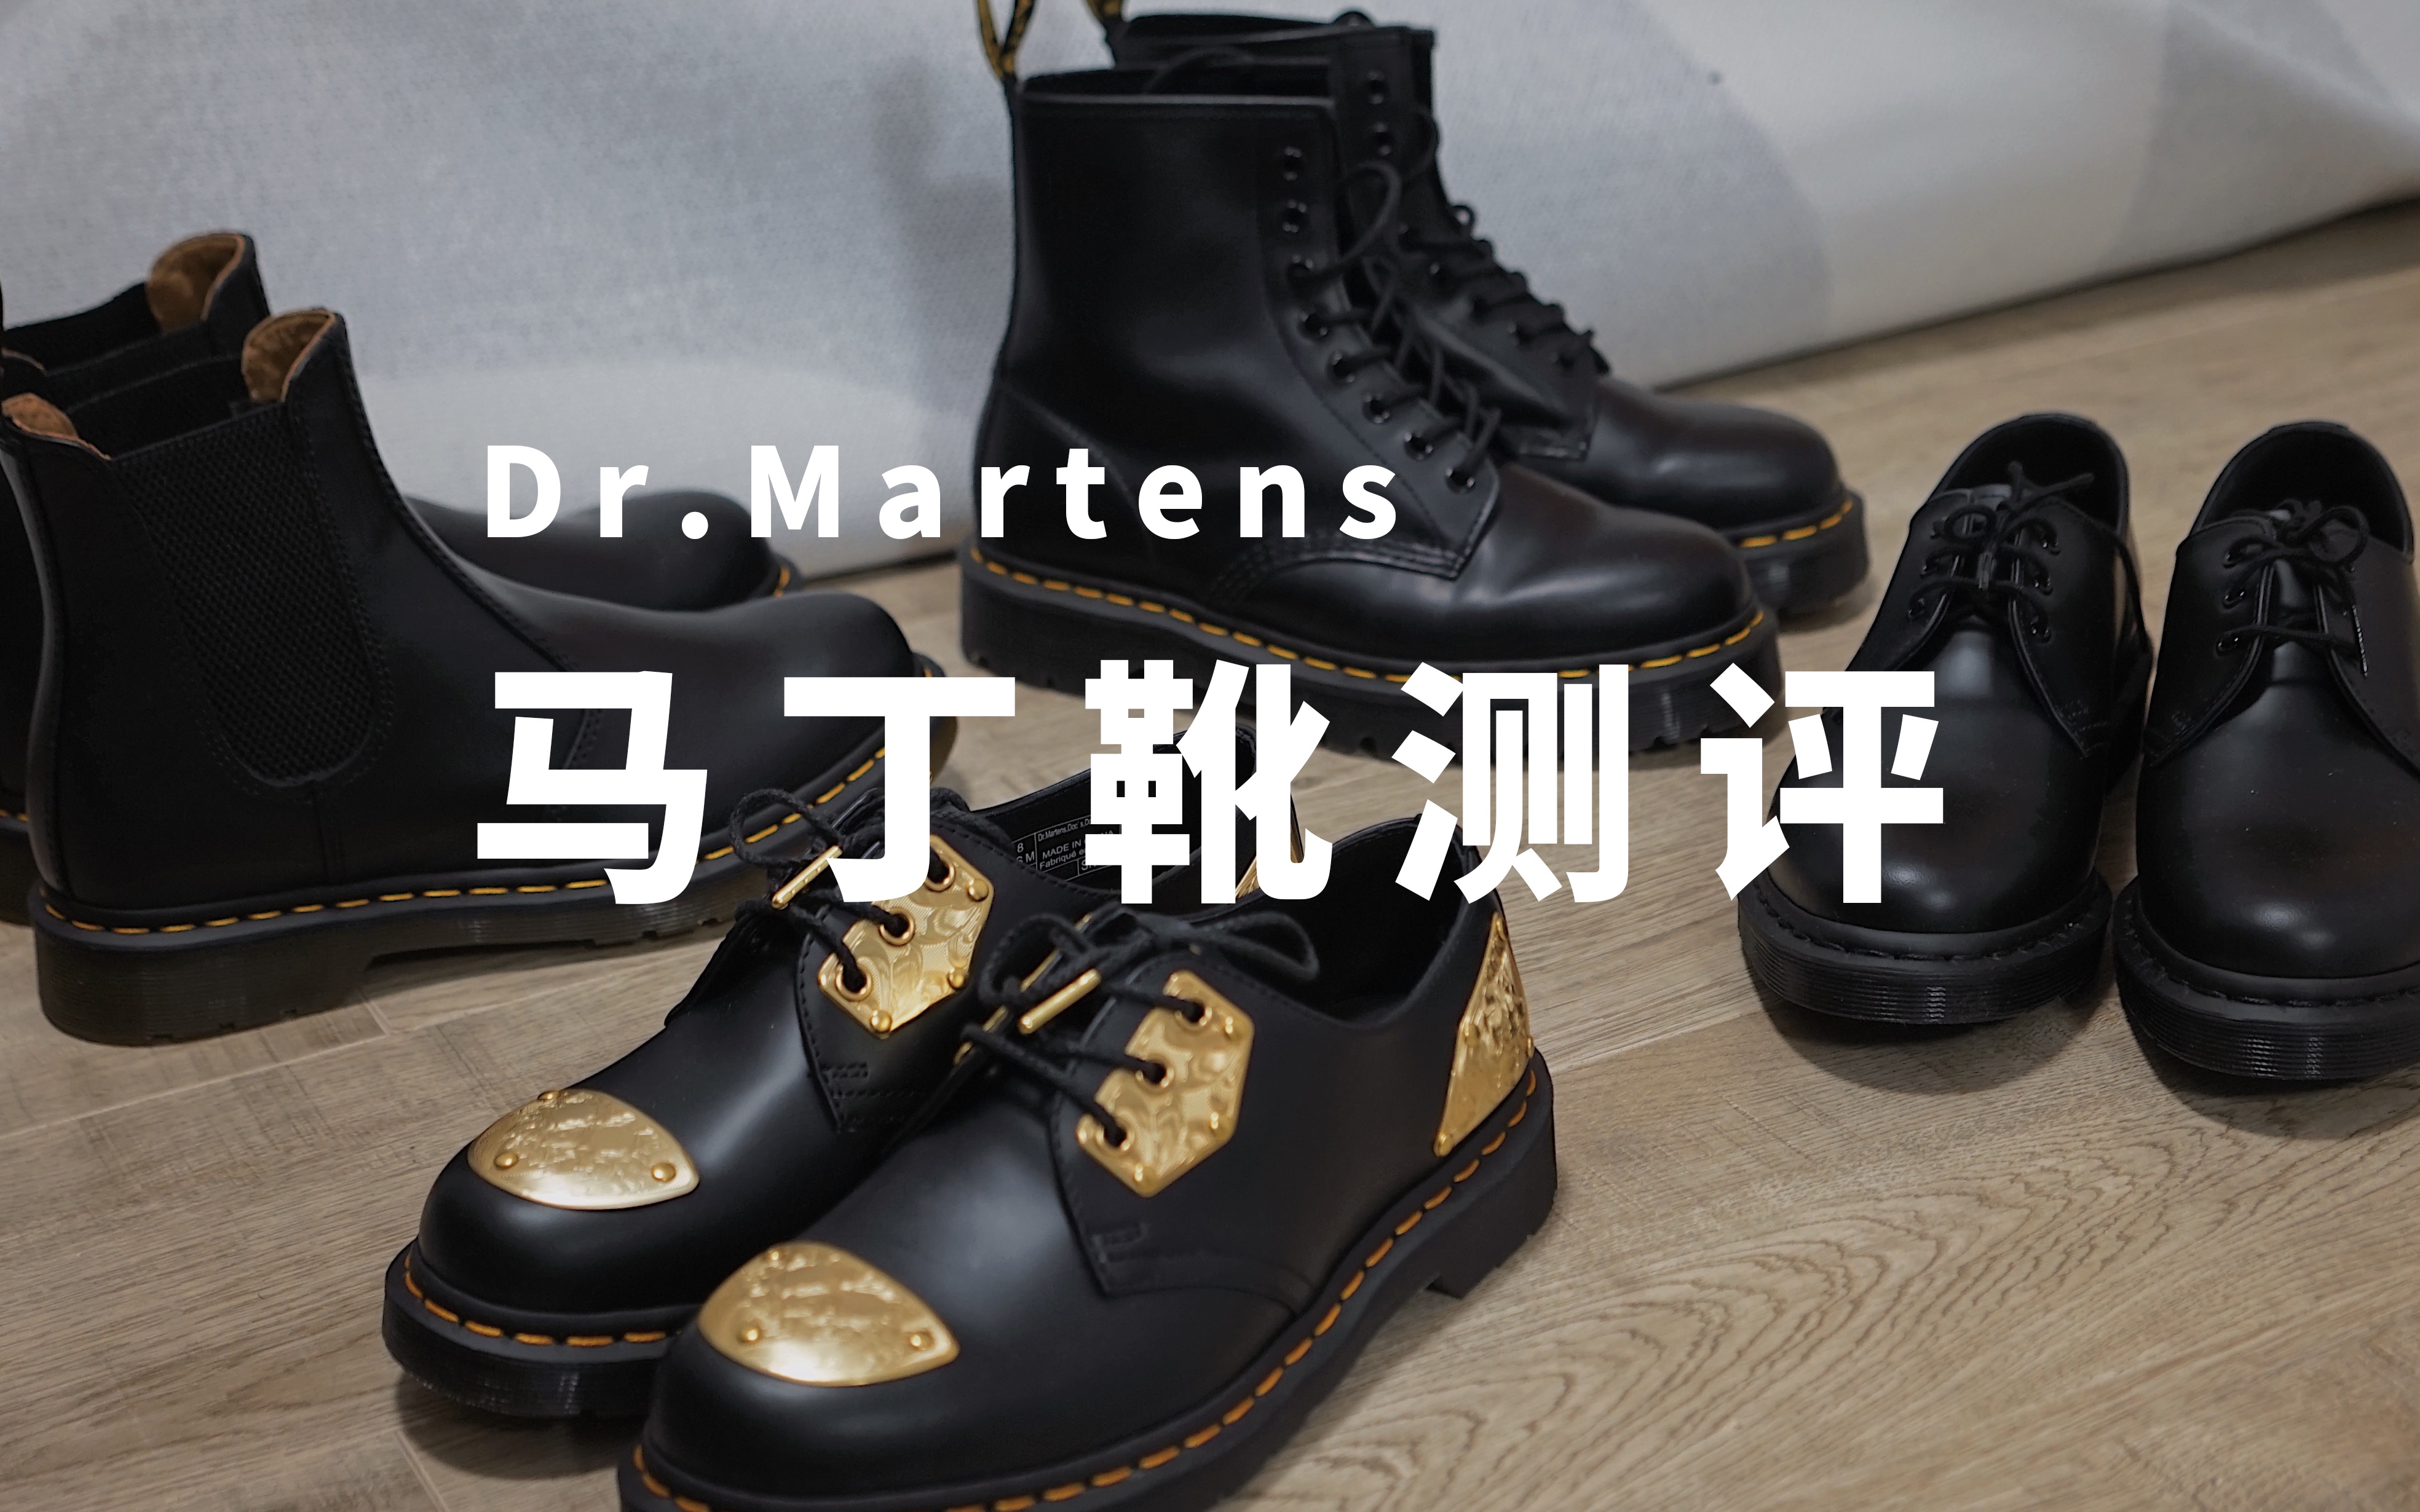 四双马丁靴测评 | 选什么鞋型不磨脚 | 马丁博士